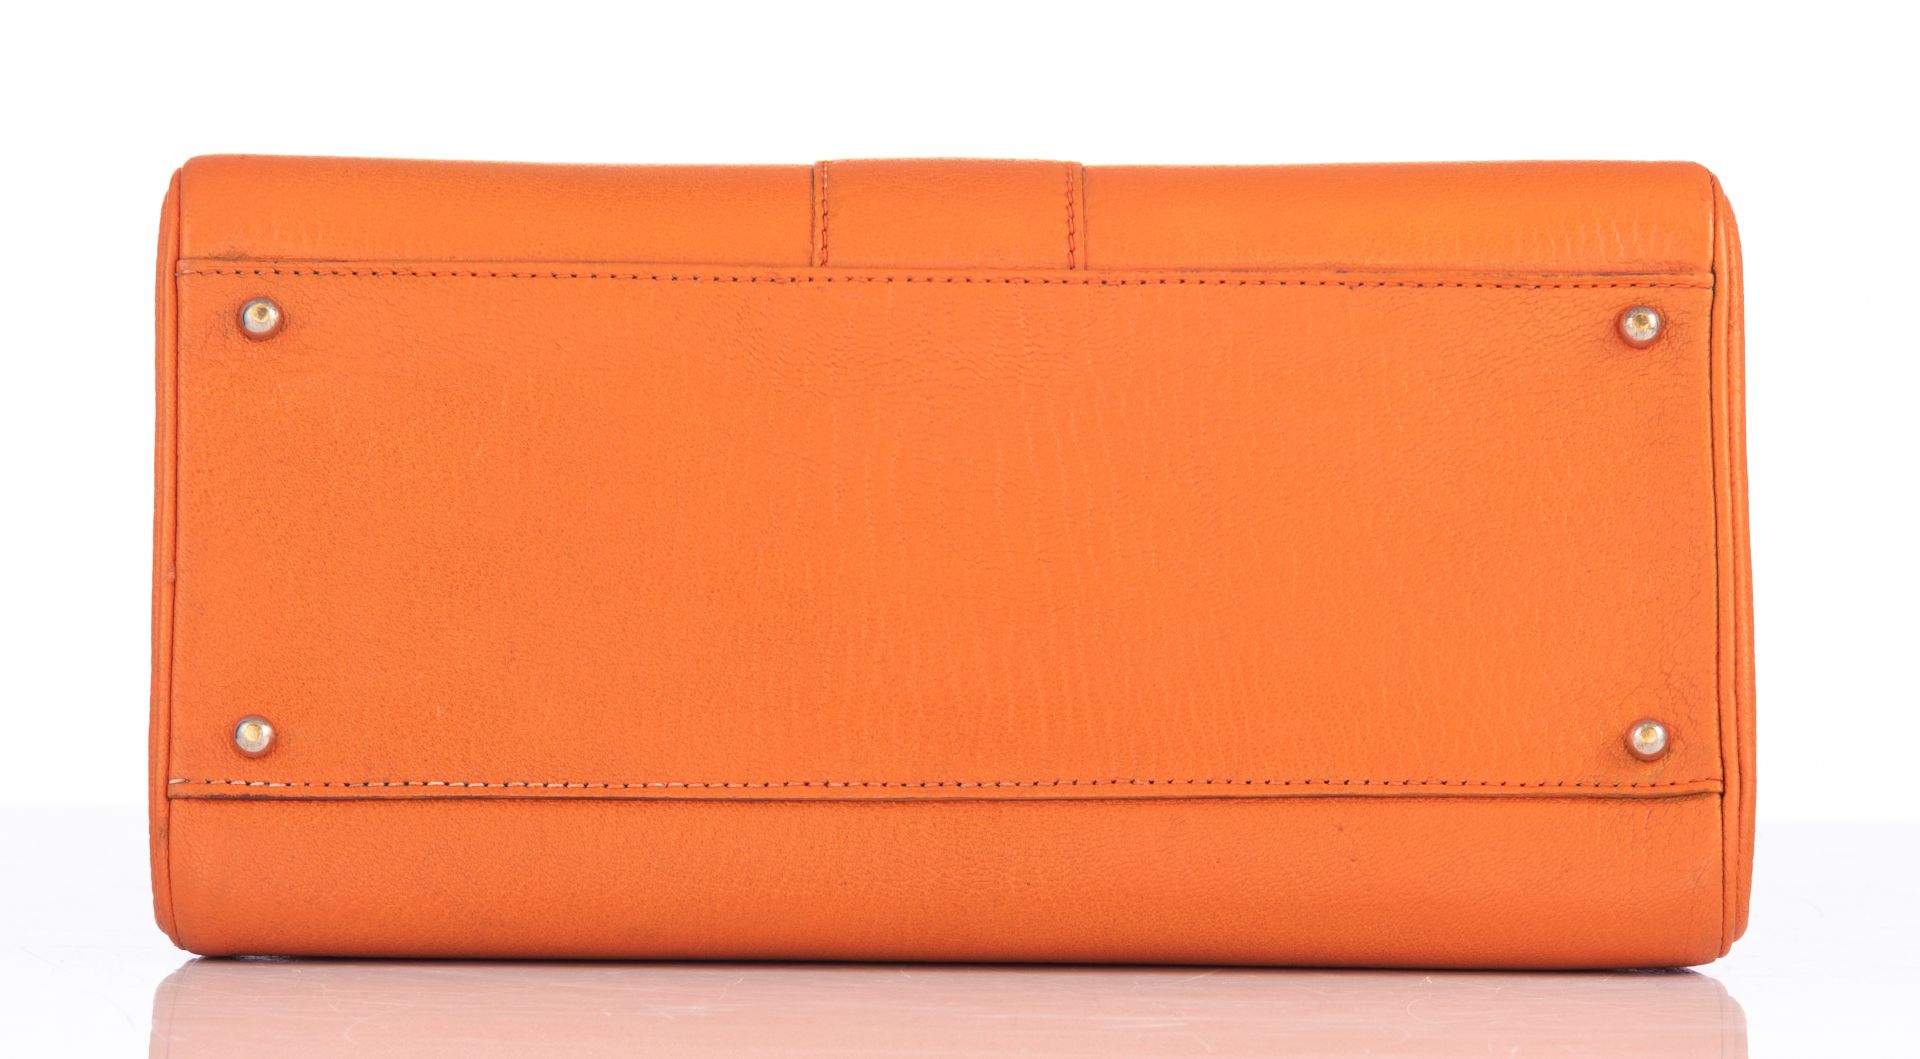 An orange leather Delvaux Brillant MM handbag, H 22 - W 29 cm - D 14,5 cm - Image 7 of 17